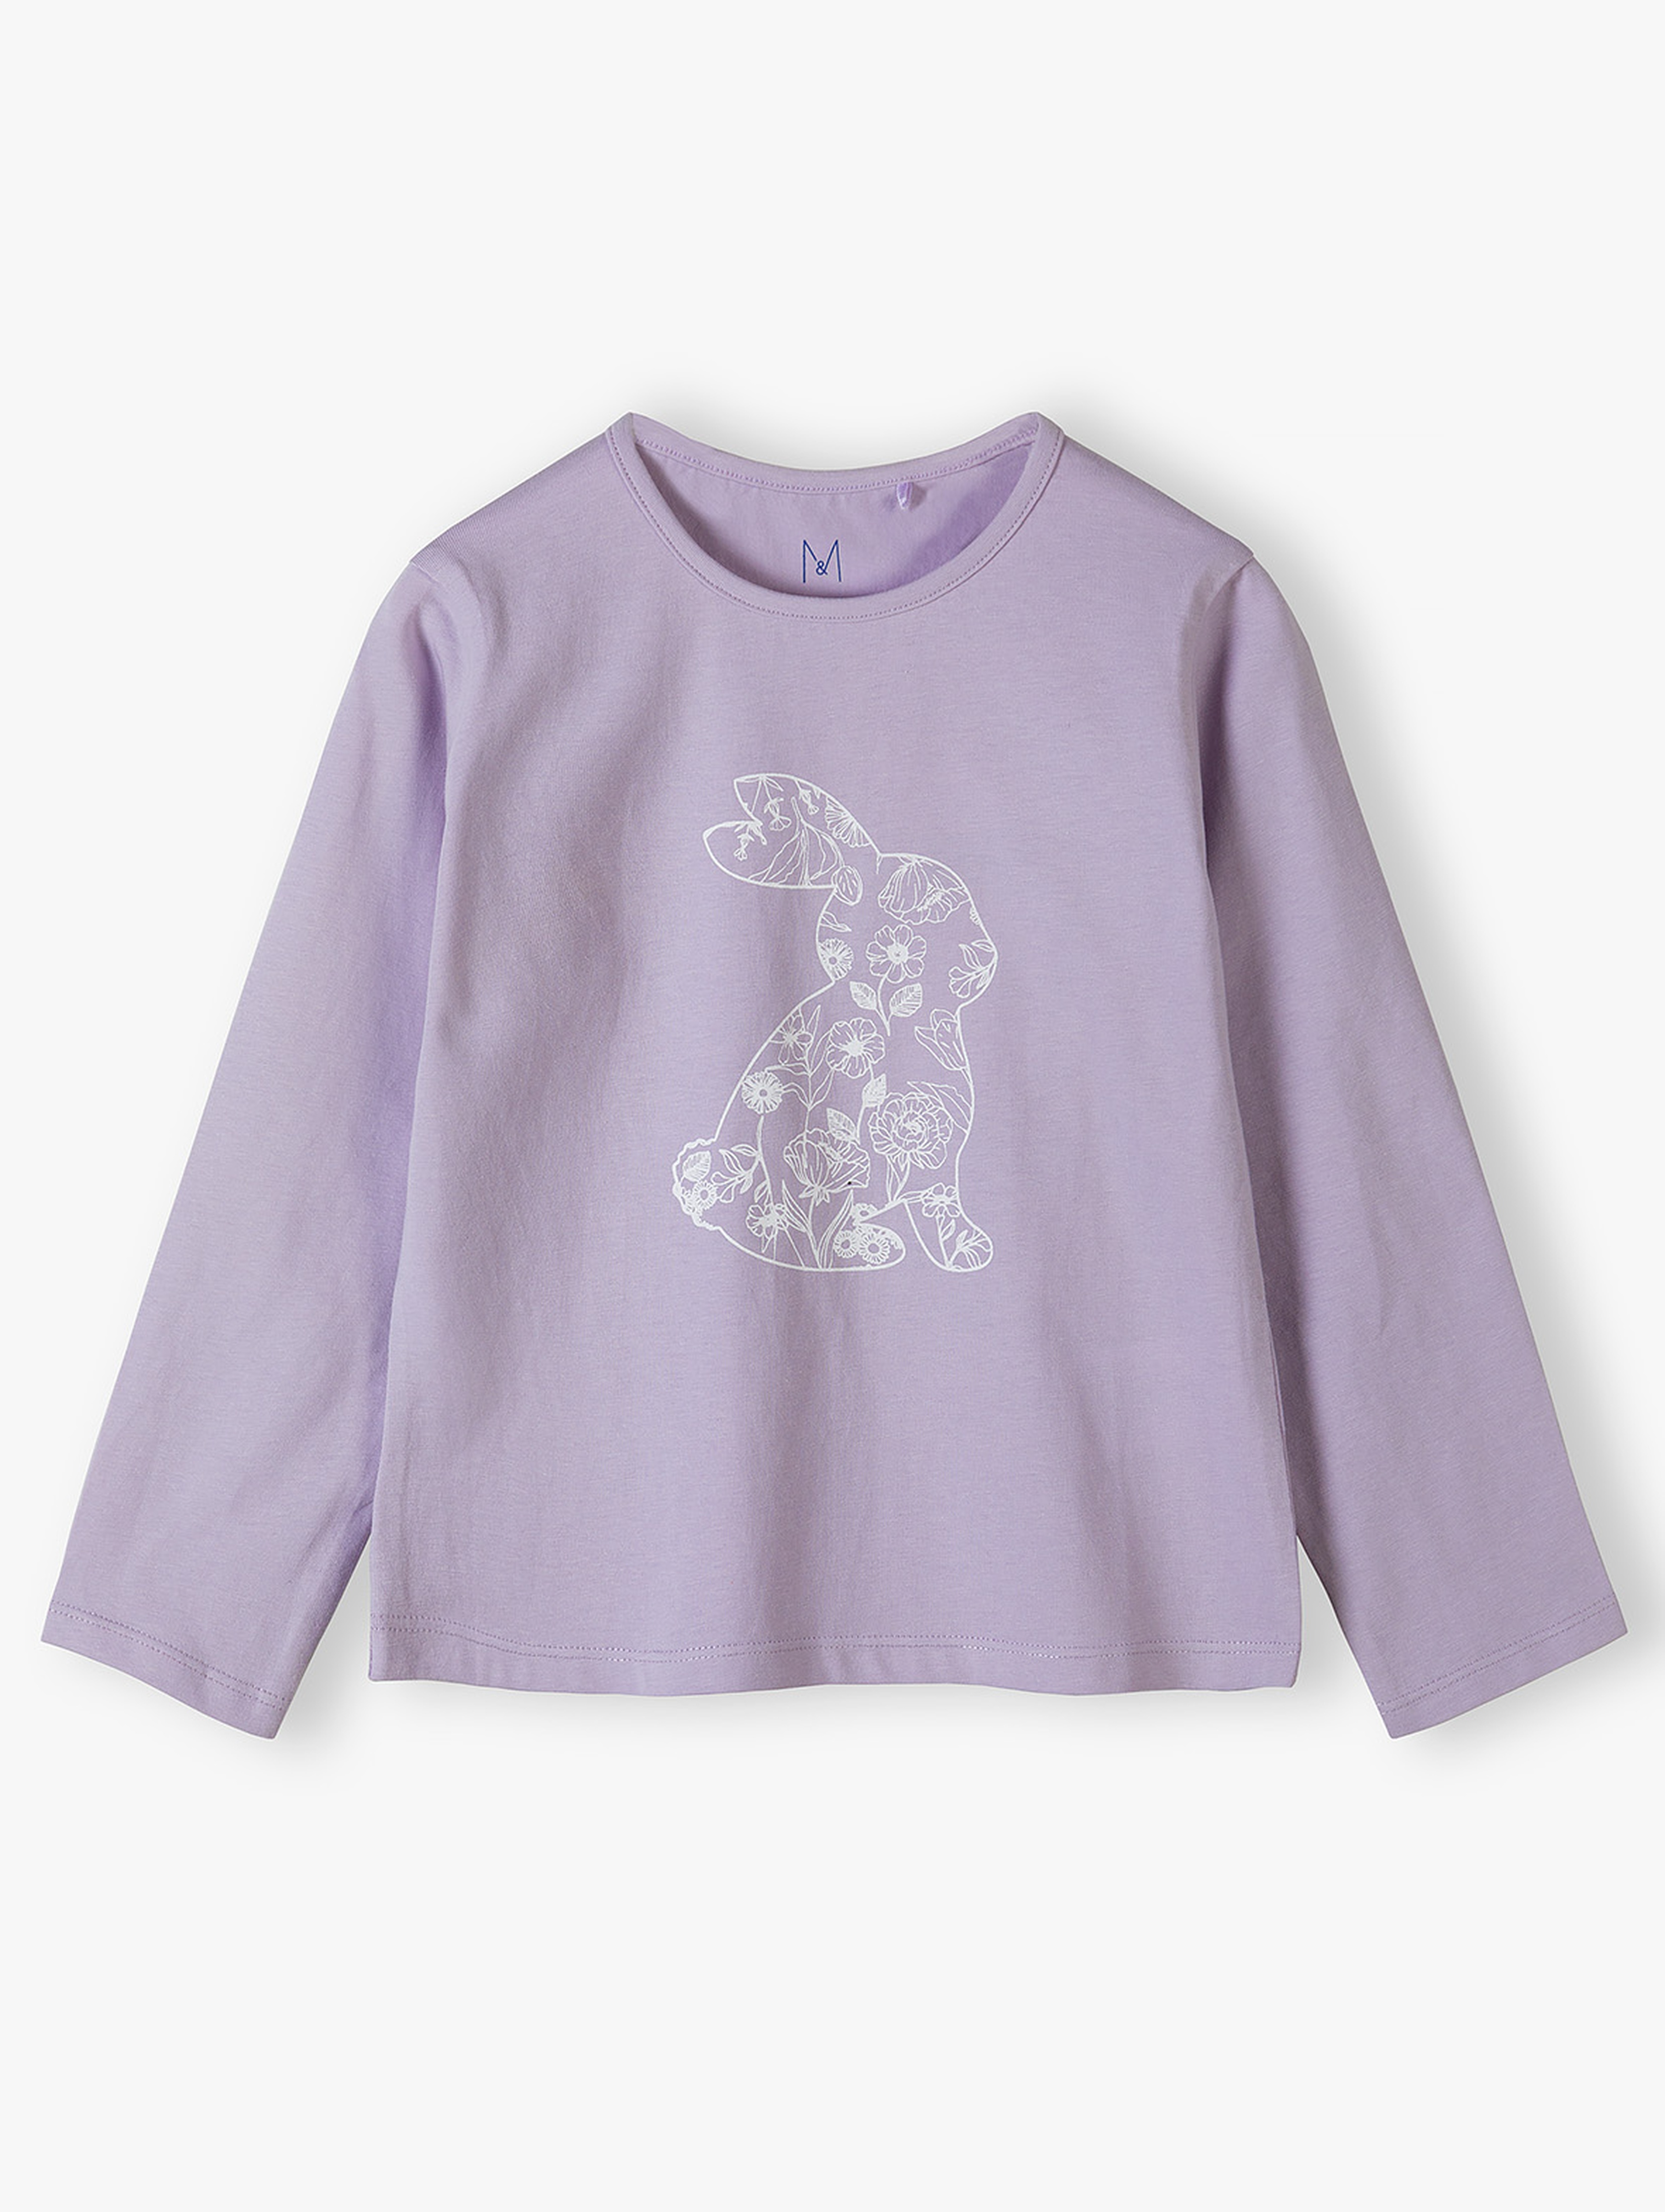 Fioletowa bluzka dziewczęca z królikiem - Max&Mia